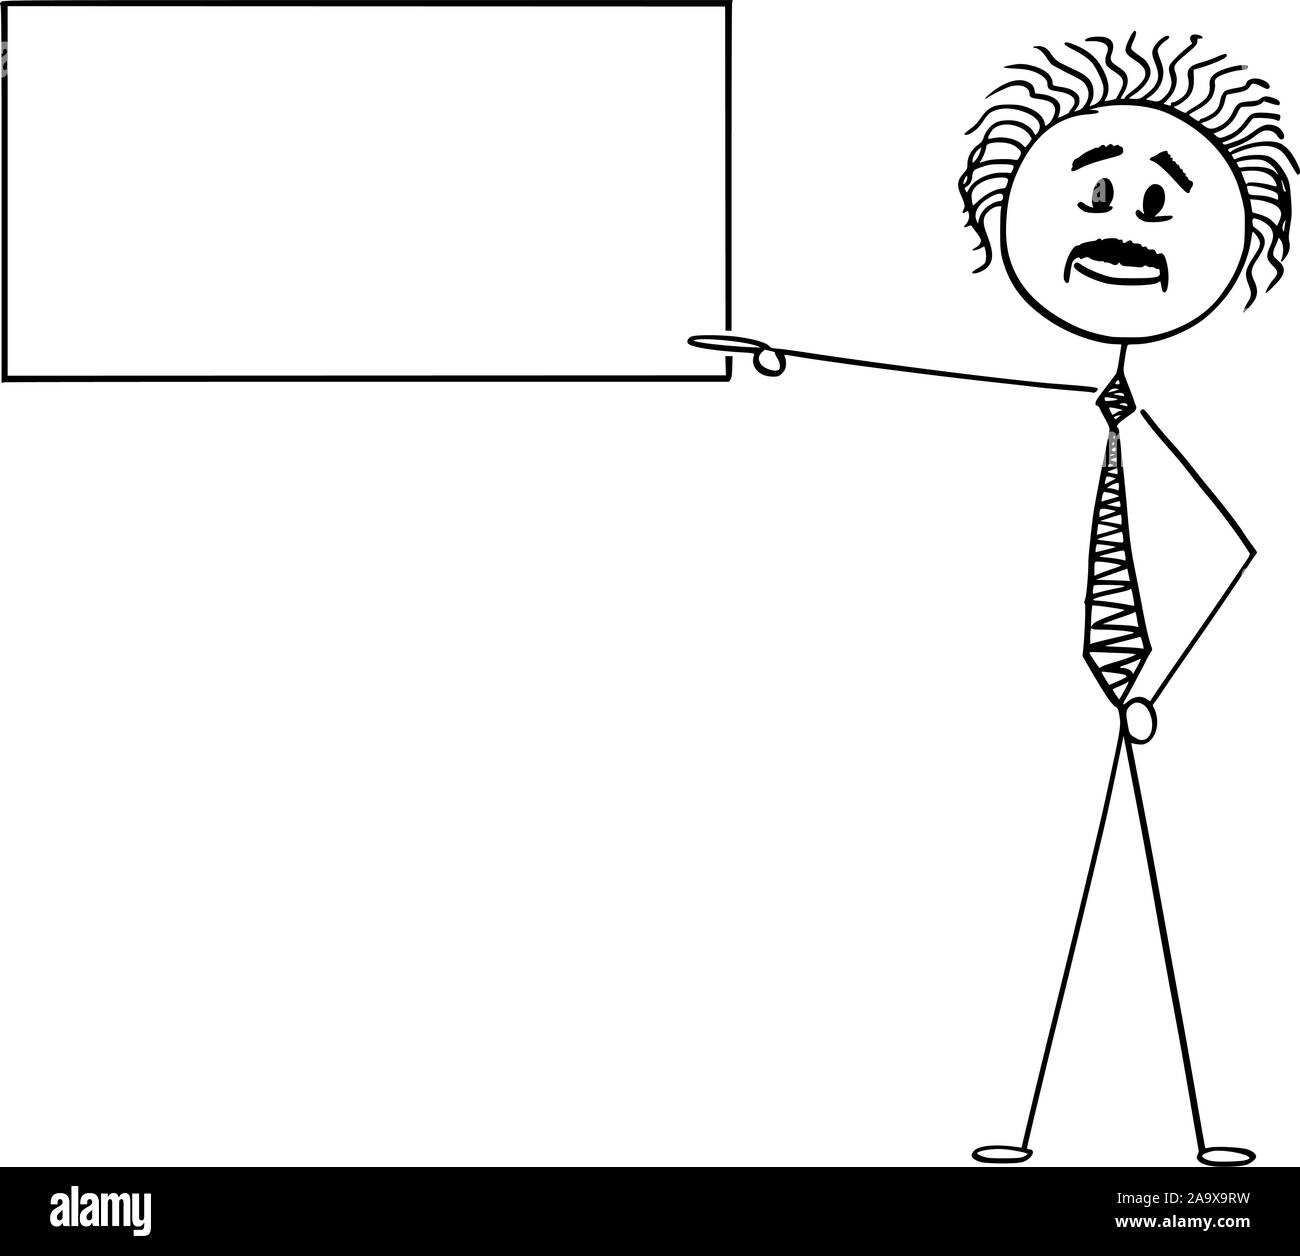 Vektor cartoon Strichmännchen Zeichnen konzeptionelle Darstellung der Wissenschaftler Albert Einstein, der auf leere Zeichen. Stock Vektor